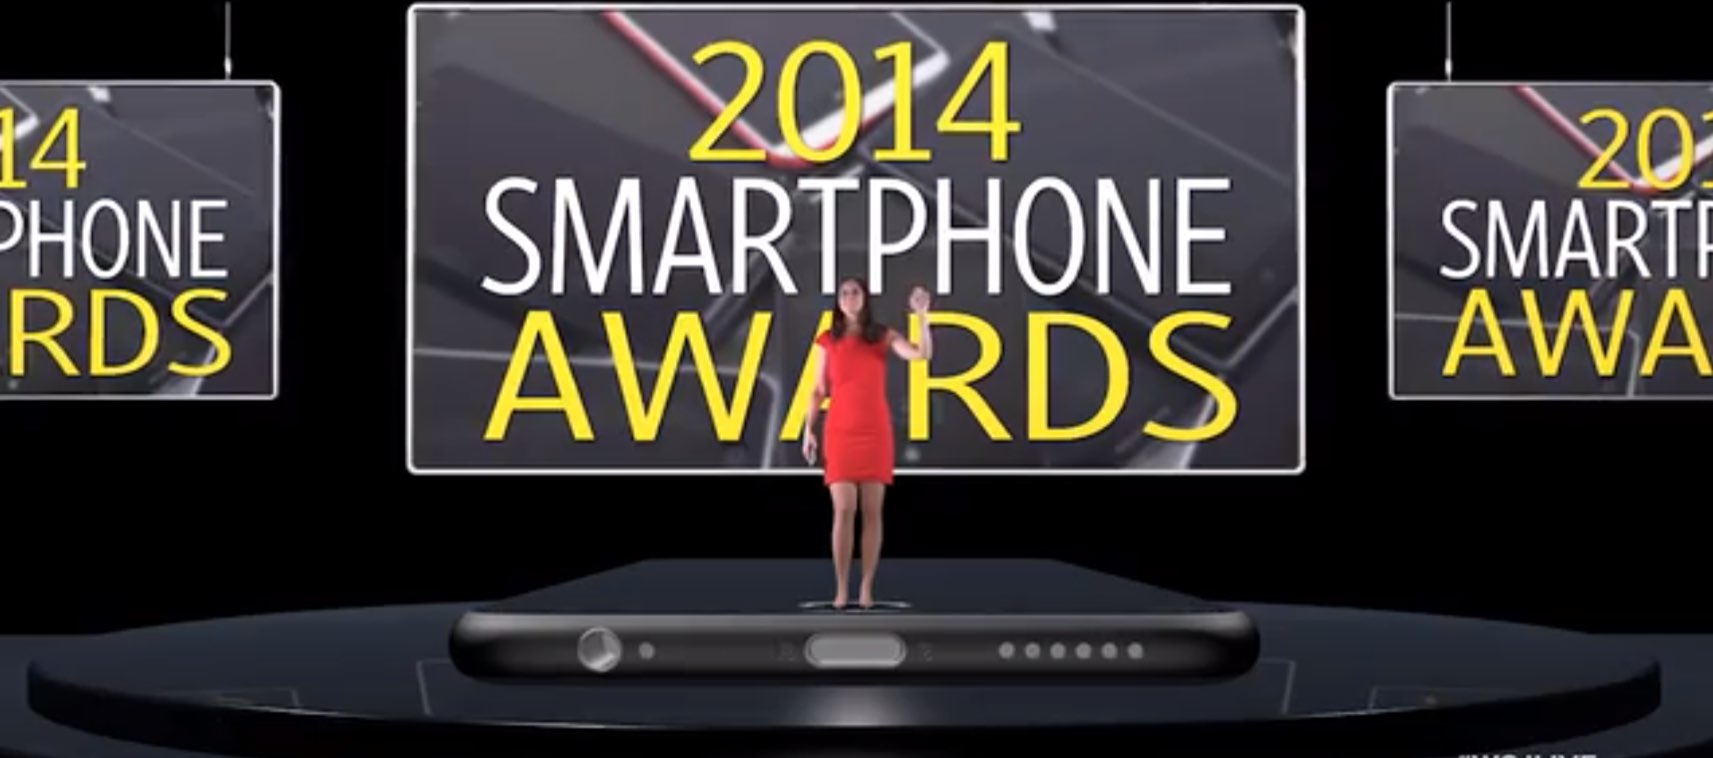 WSJ: iPhone 6 & iPhone 6 Plus BESTE SMARTPHONES 2014! 1